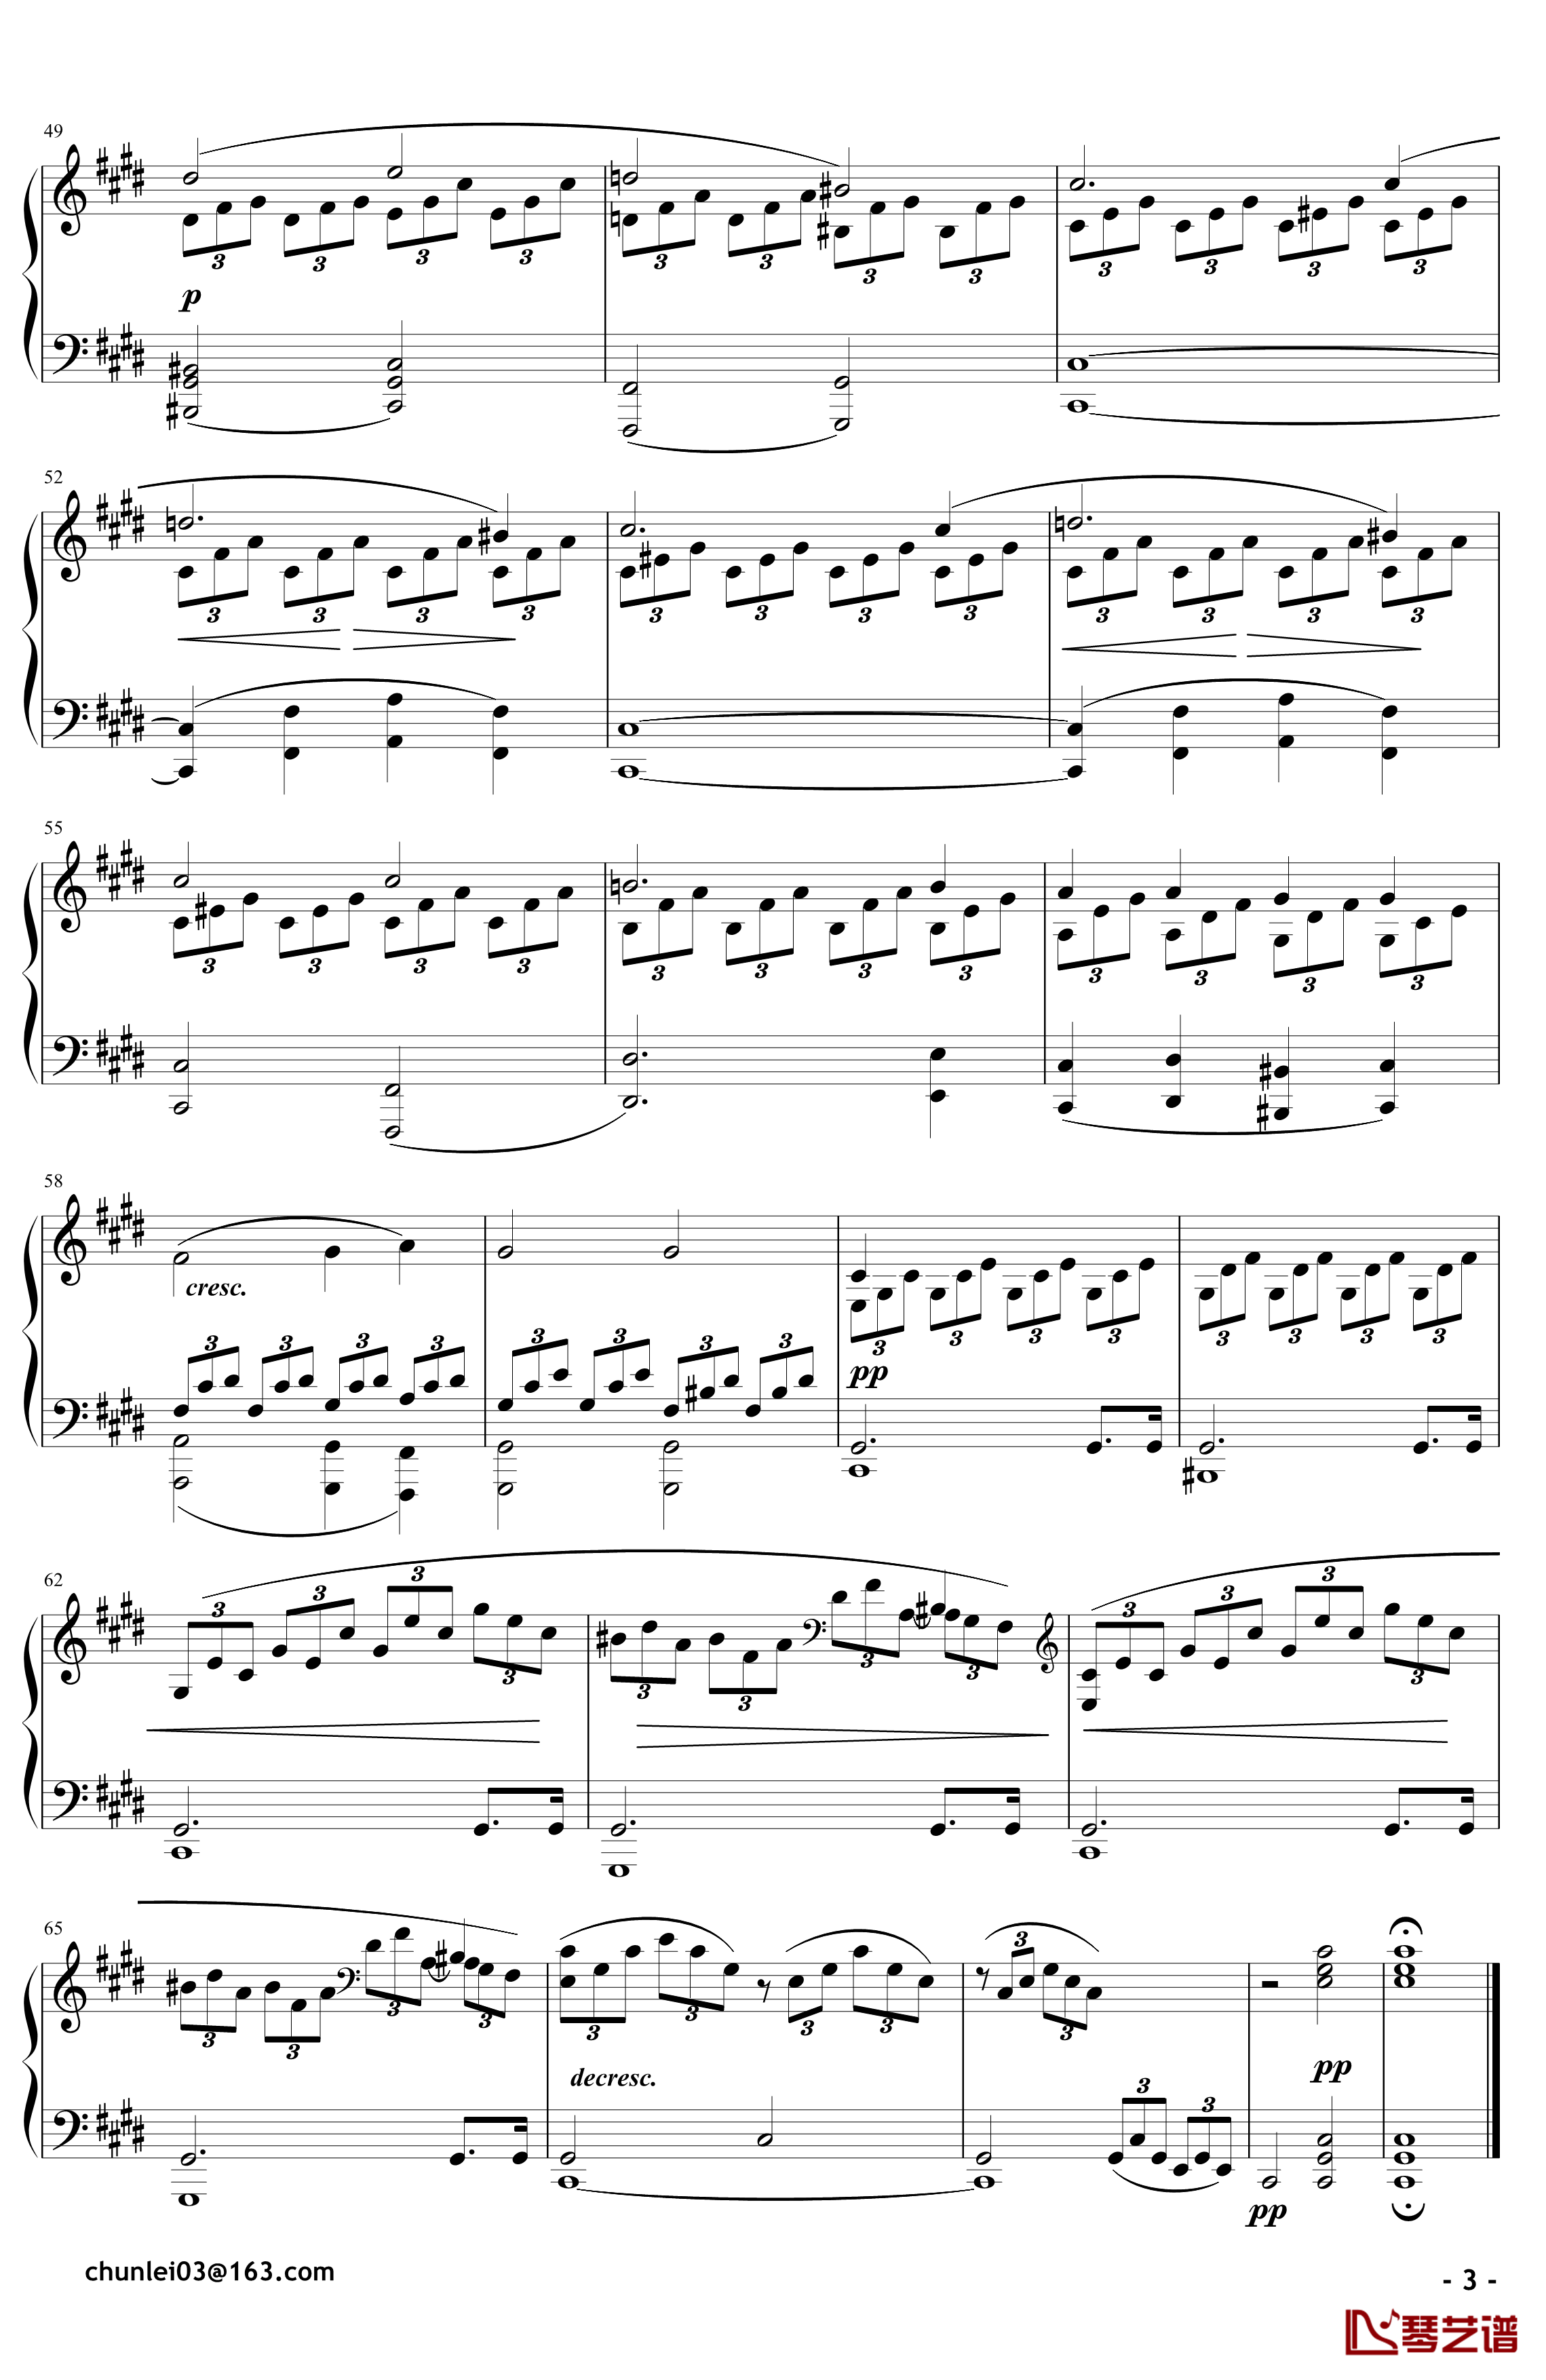 月光钢琴谱-奏鸣曲-贝多芬-beethoven3